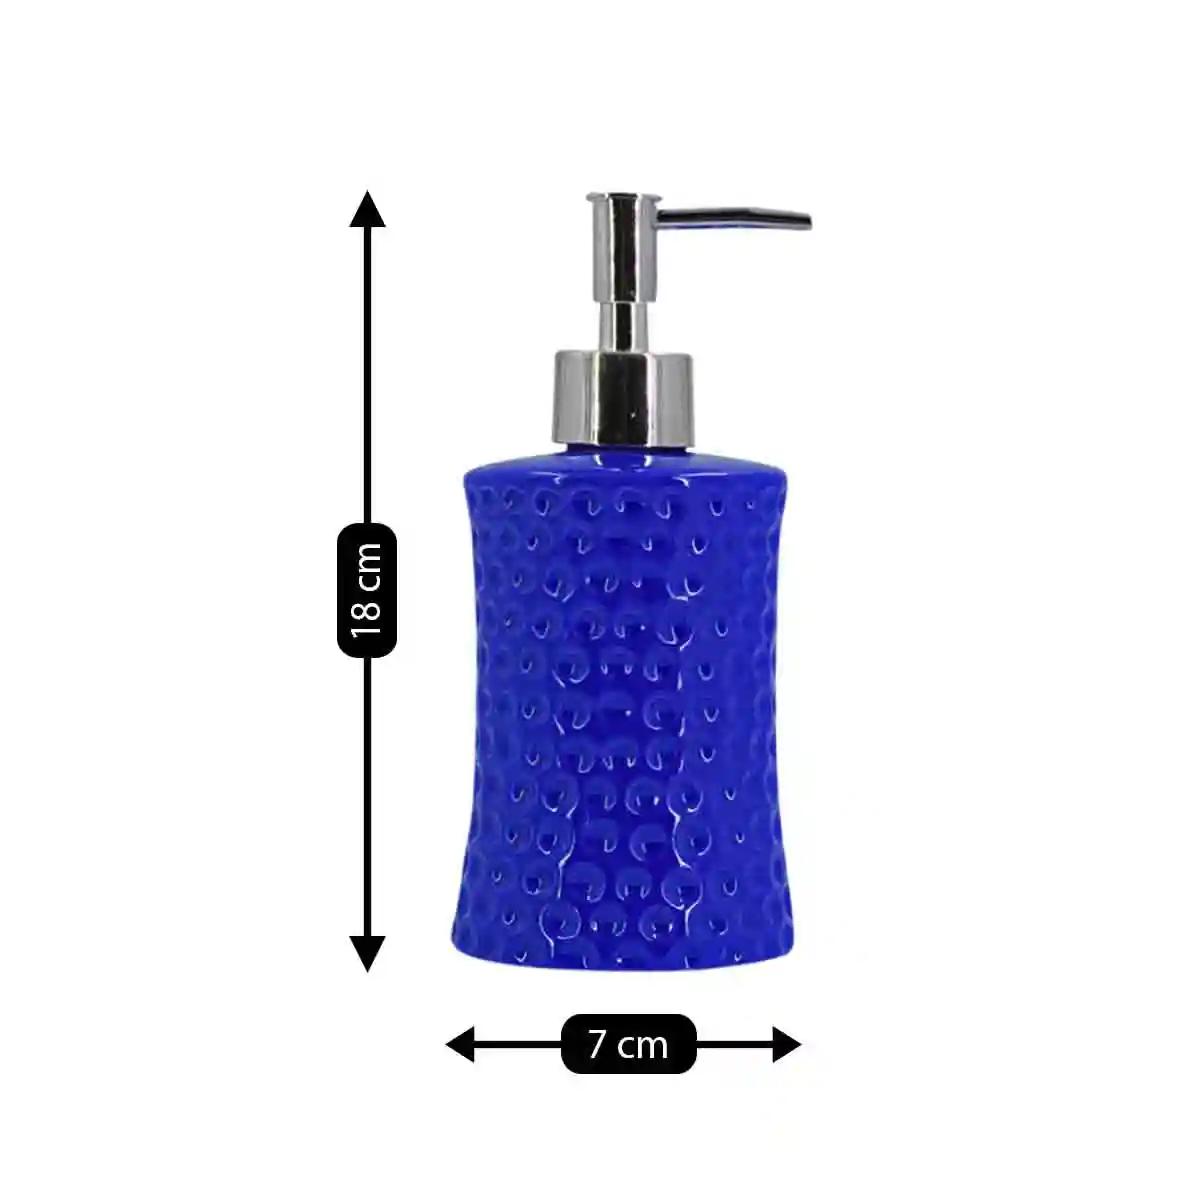 Kookee Ceramic Soap Dispenser for Bathroom handwash, refillable pump bottle for Kitchen hand wash basin, Set of 2 - Blue (8038)